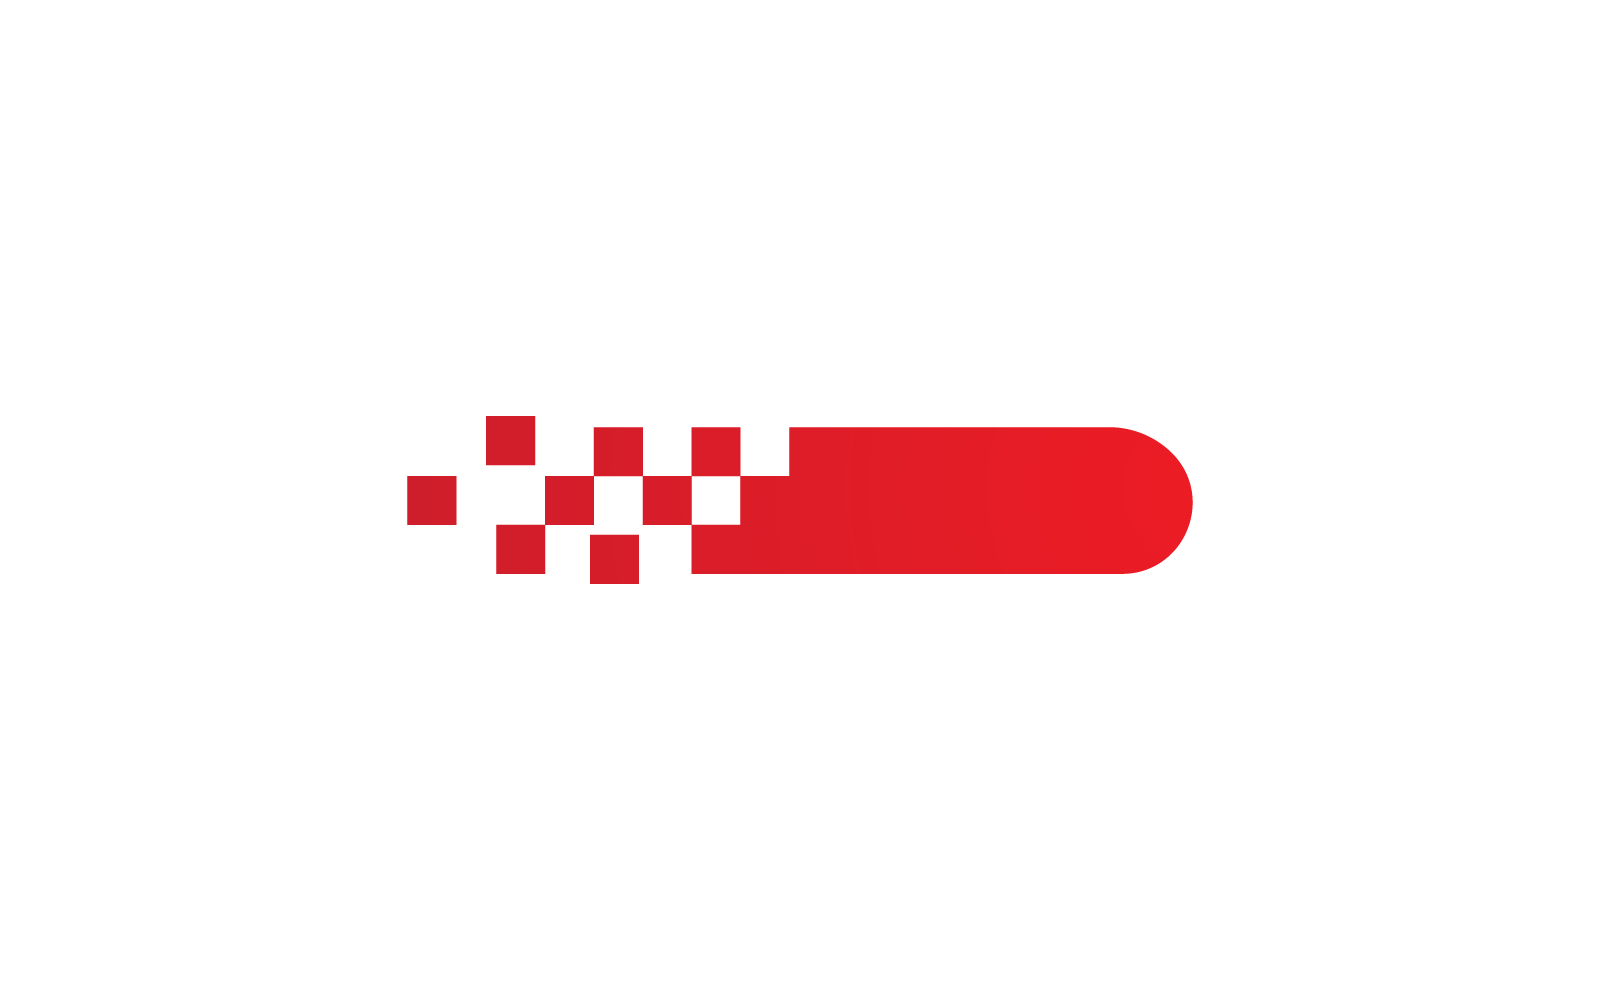 Race flag logo design vector icon template